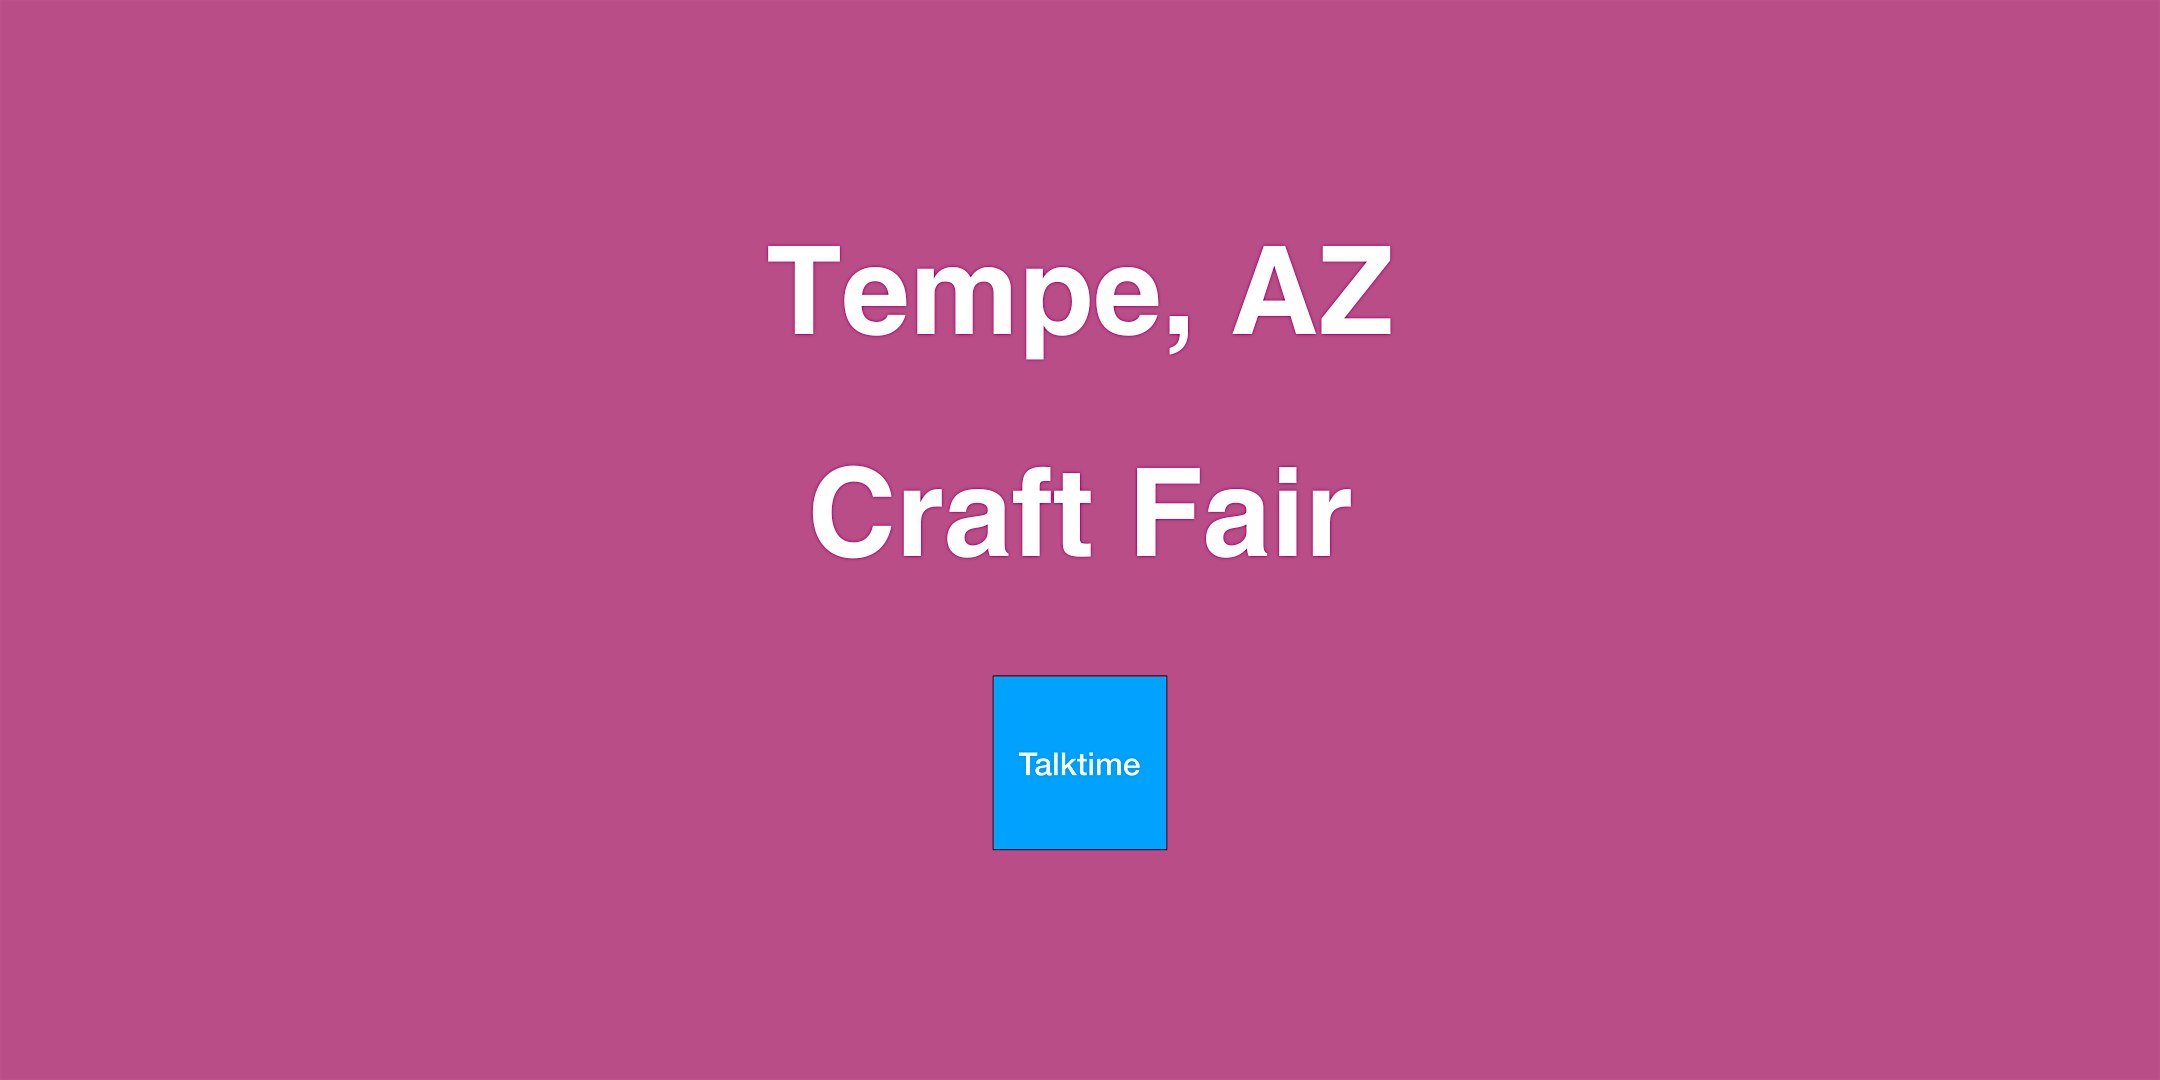 Craft Fair - Tempe